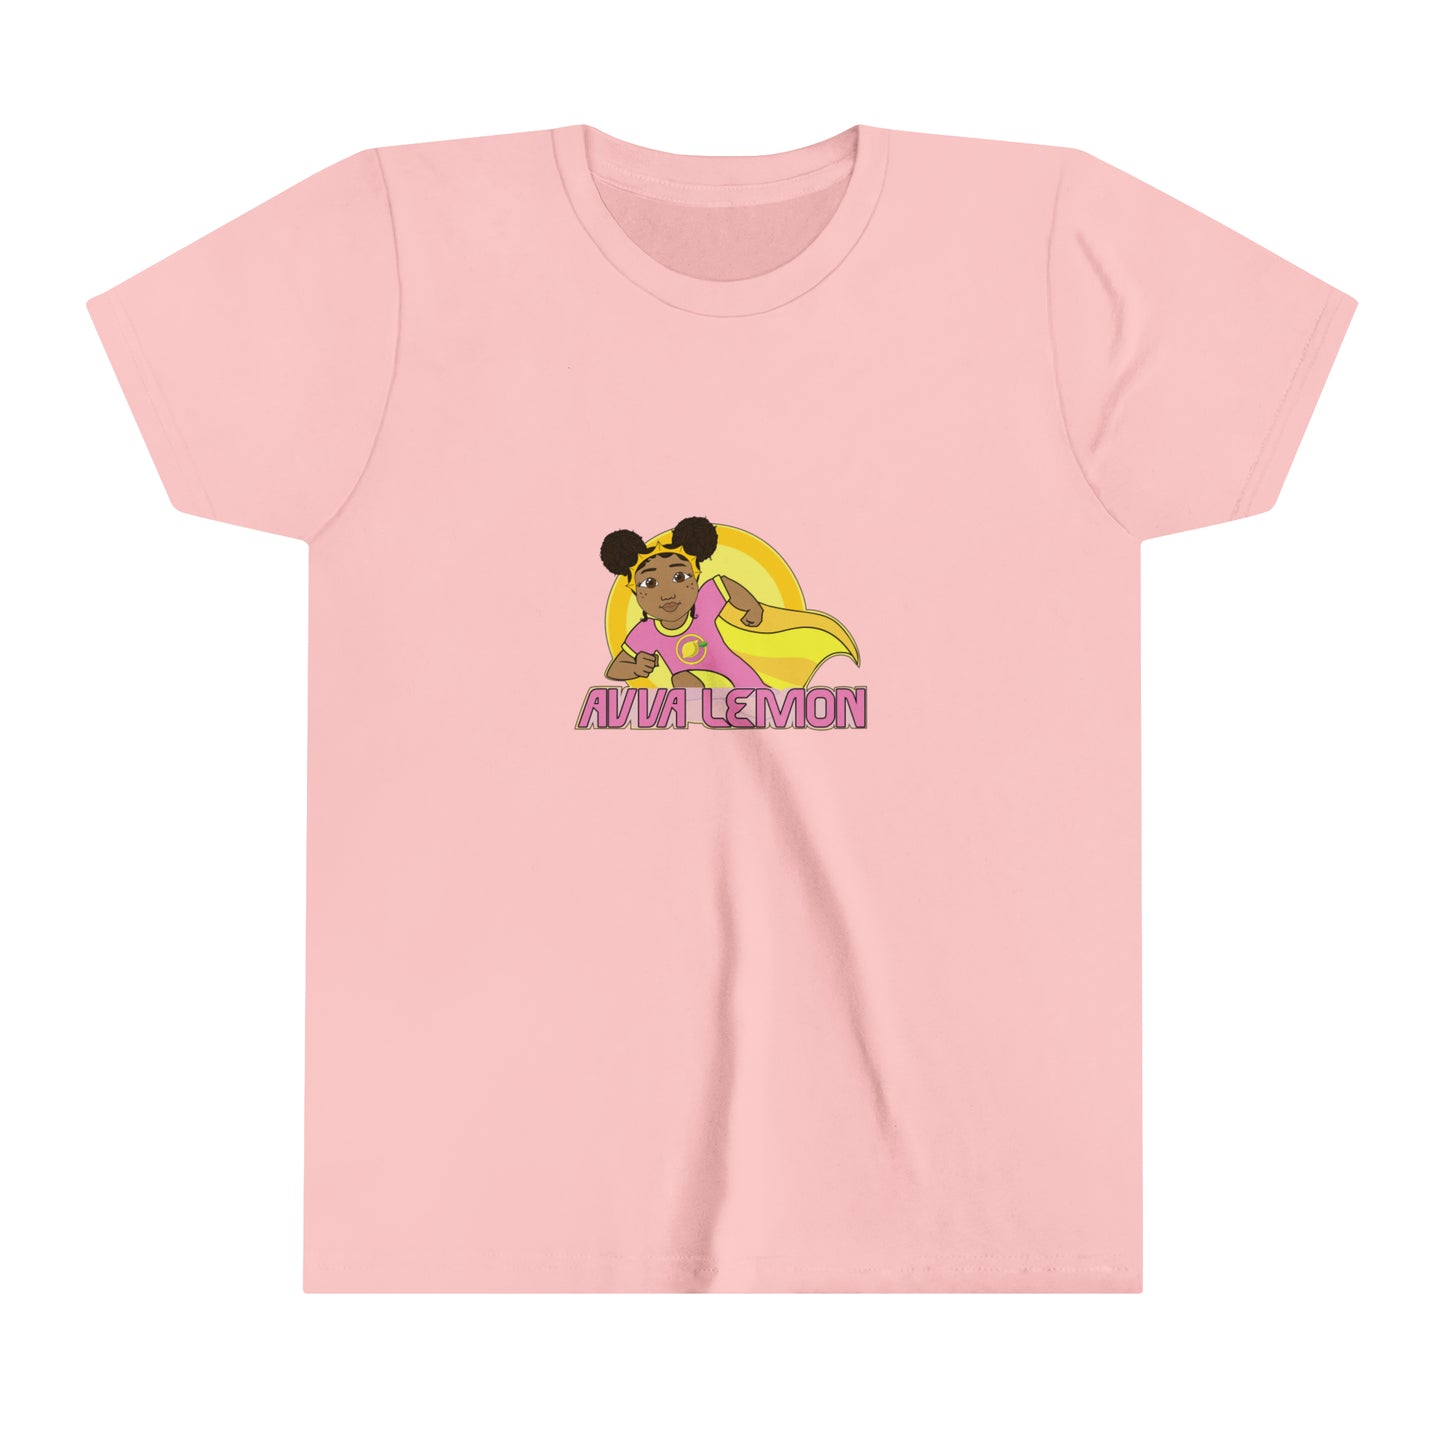 Avva Lemon Official Youth T-shirt